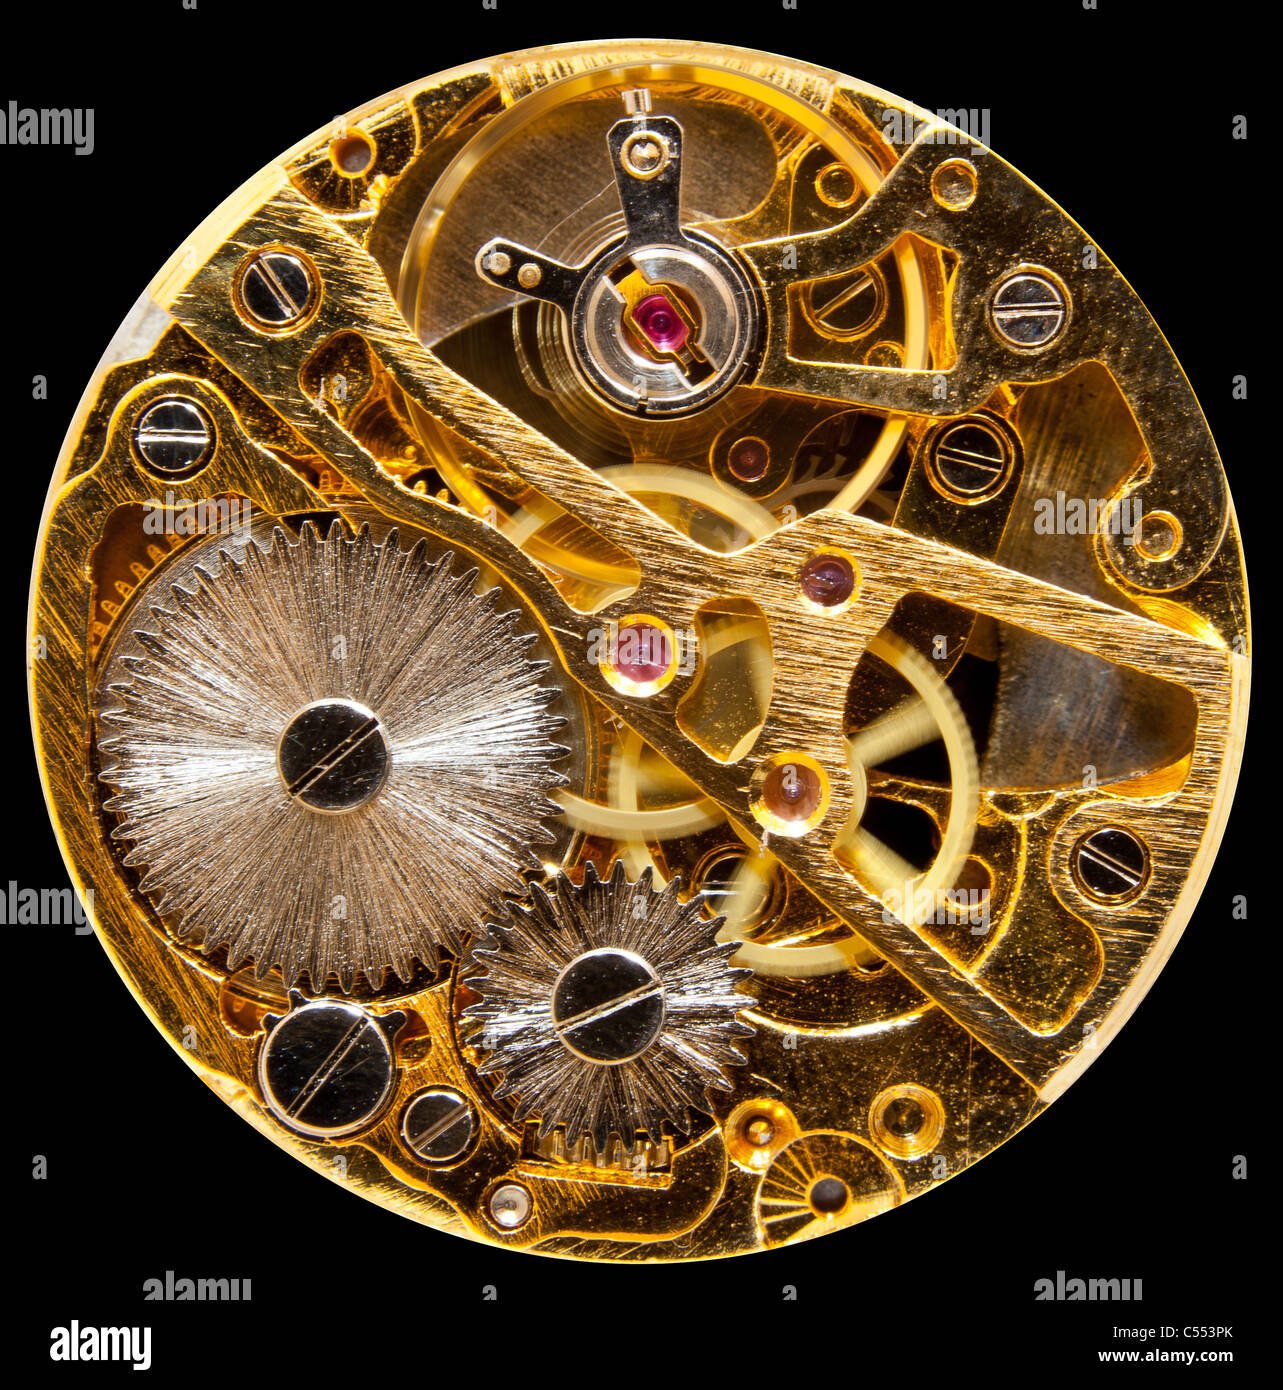 Foto del interior de un antiguo reloj de bolsillo con un movimiento mecánico. Foto de stock